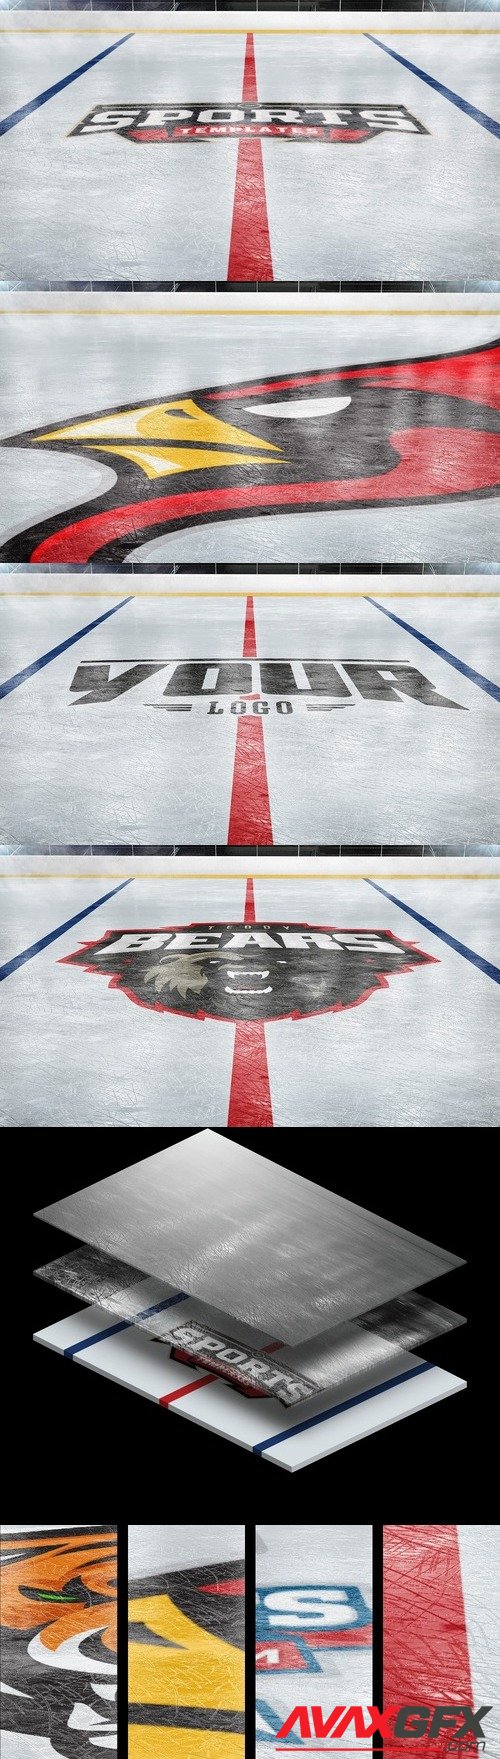 Ice Hockey Rink Photoshop Logo Mockup